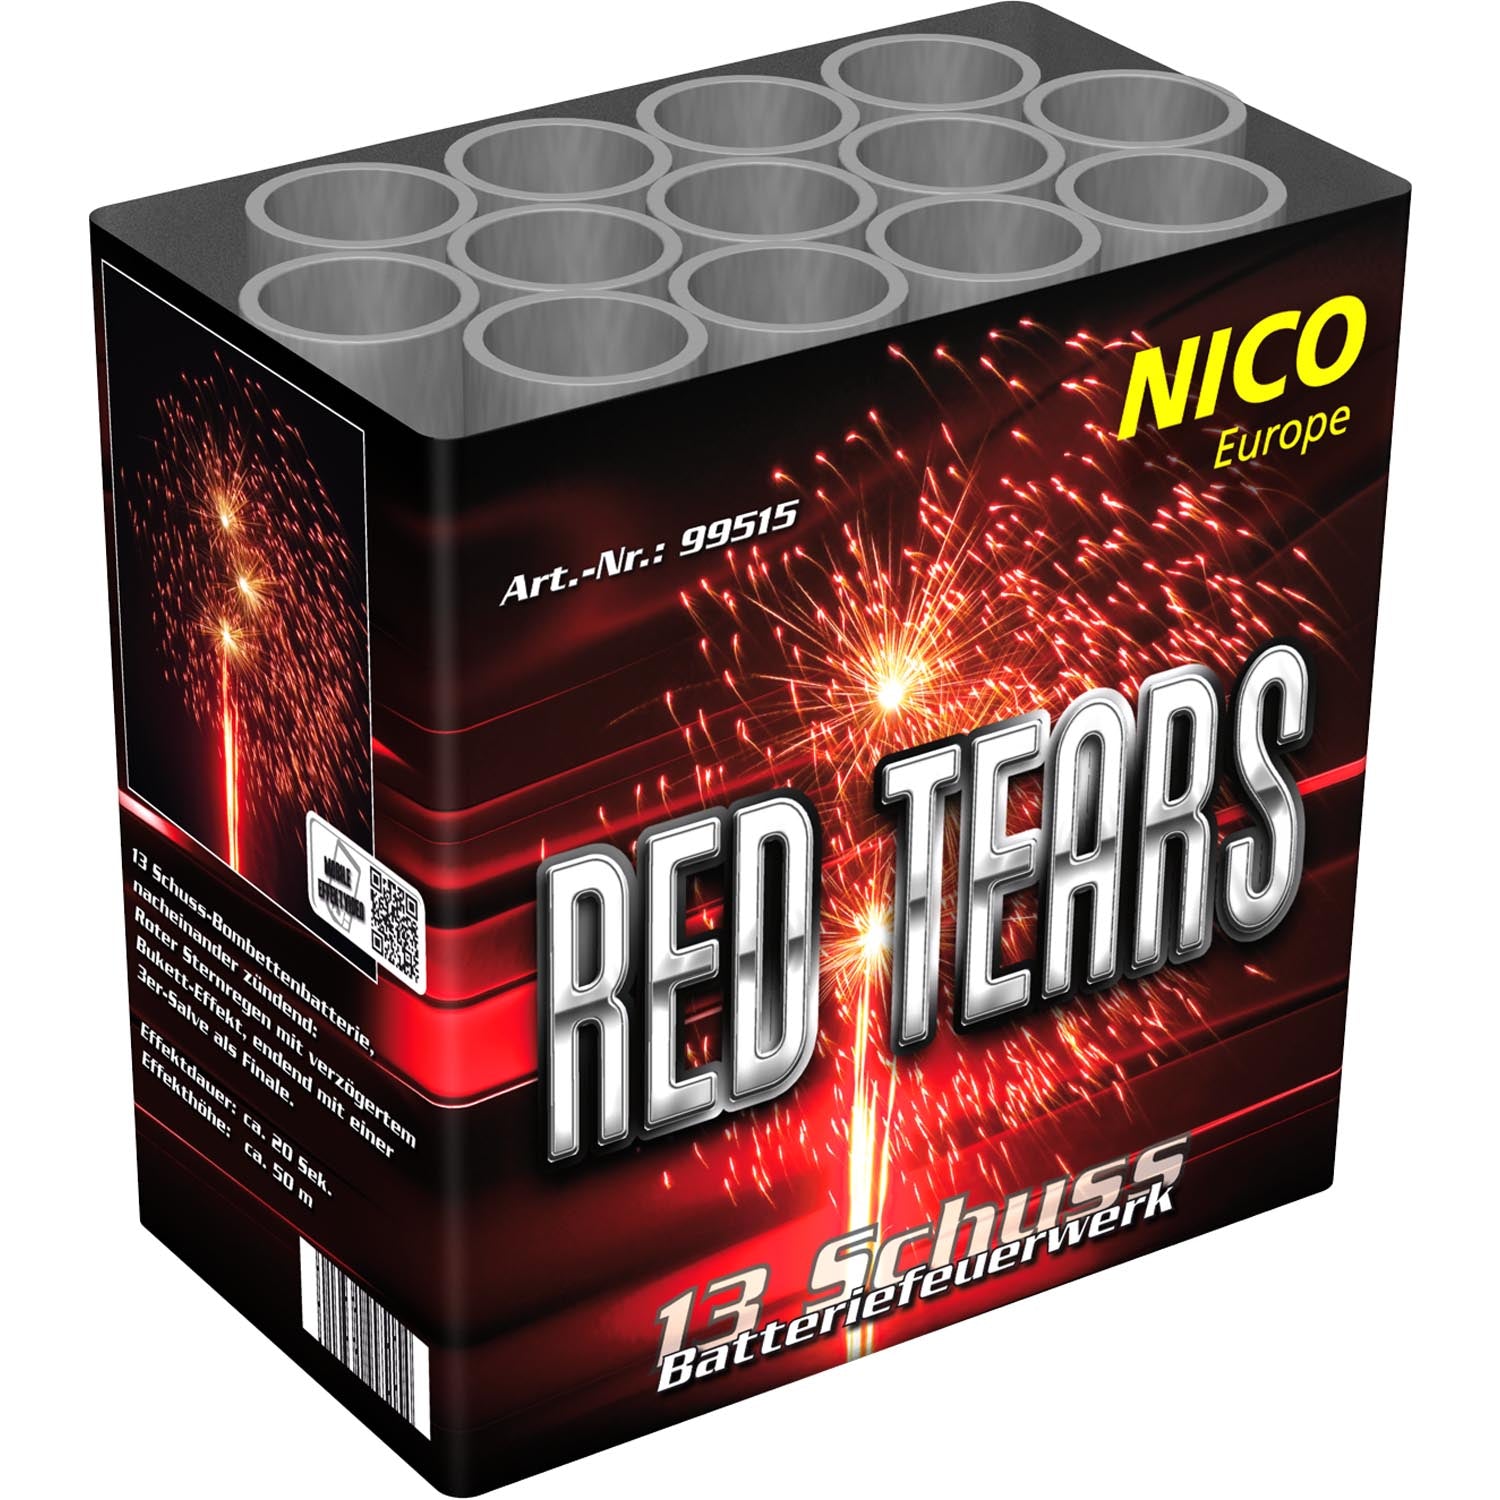 Nico Red Tears